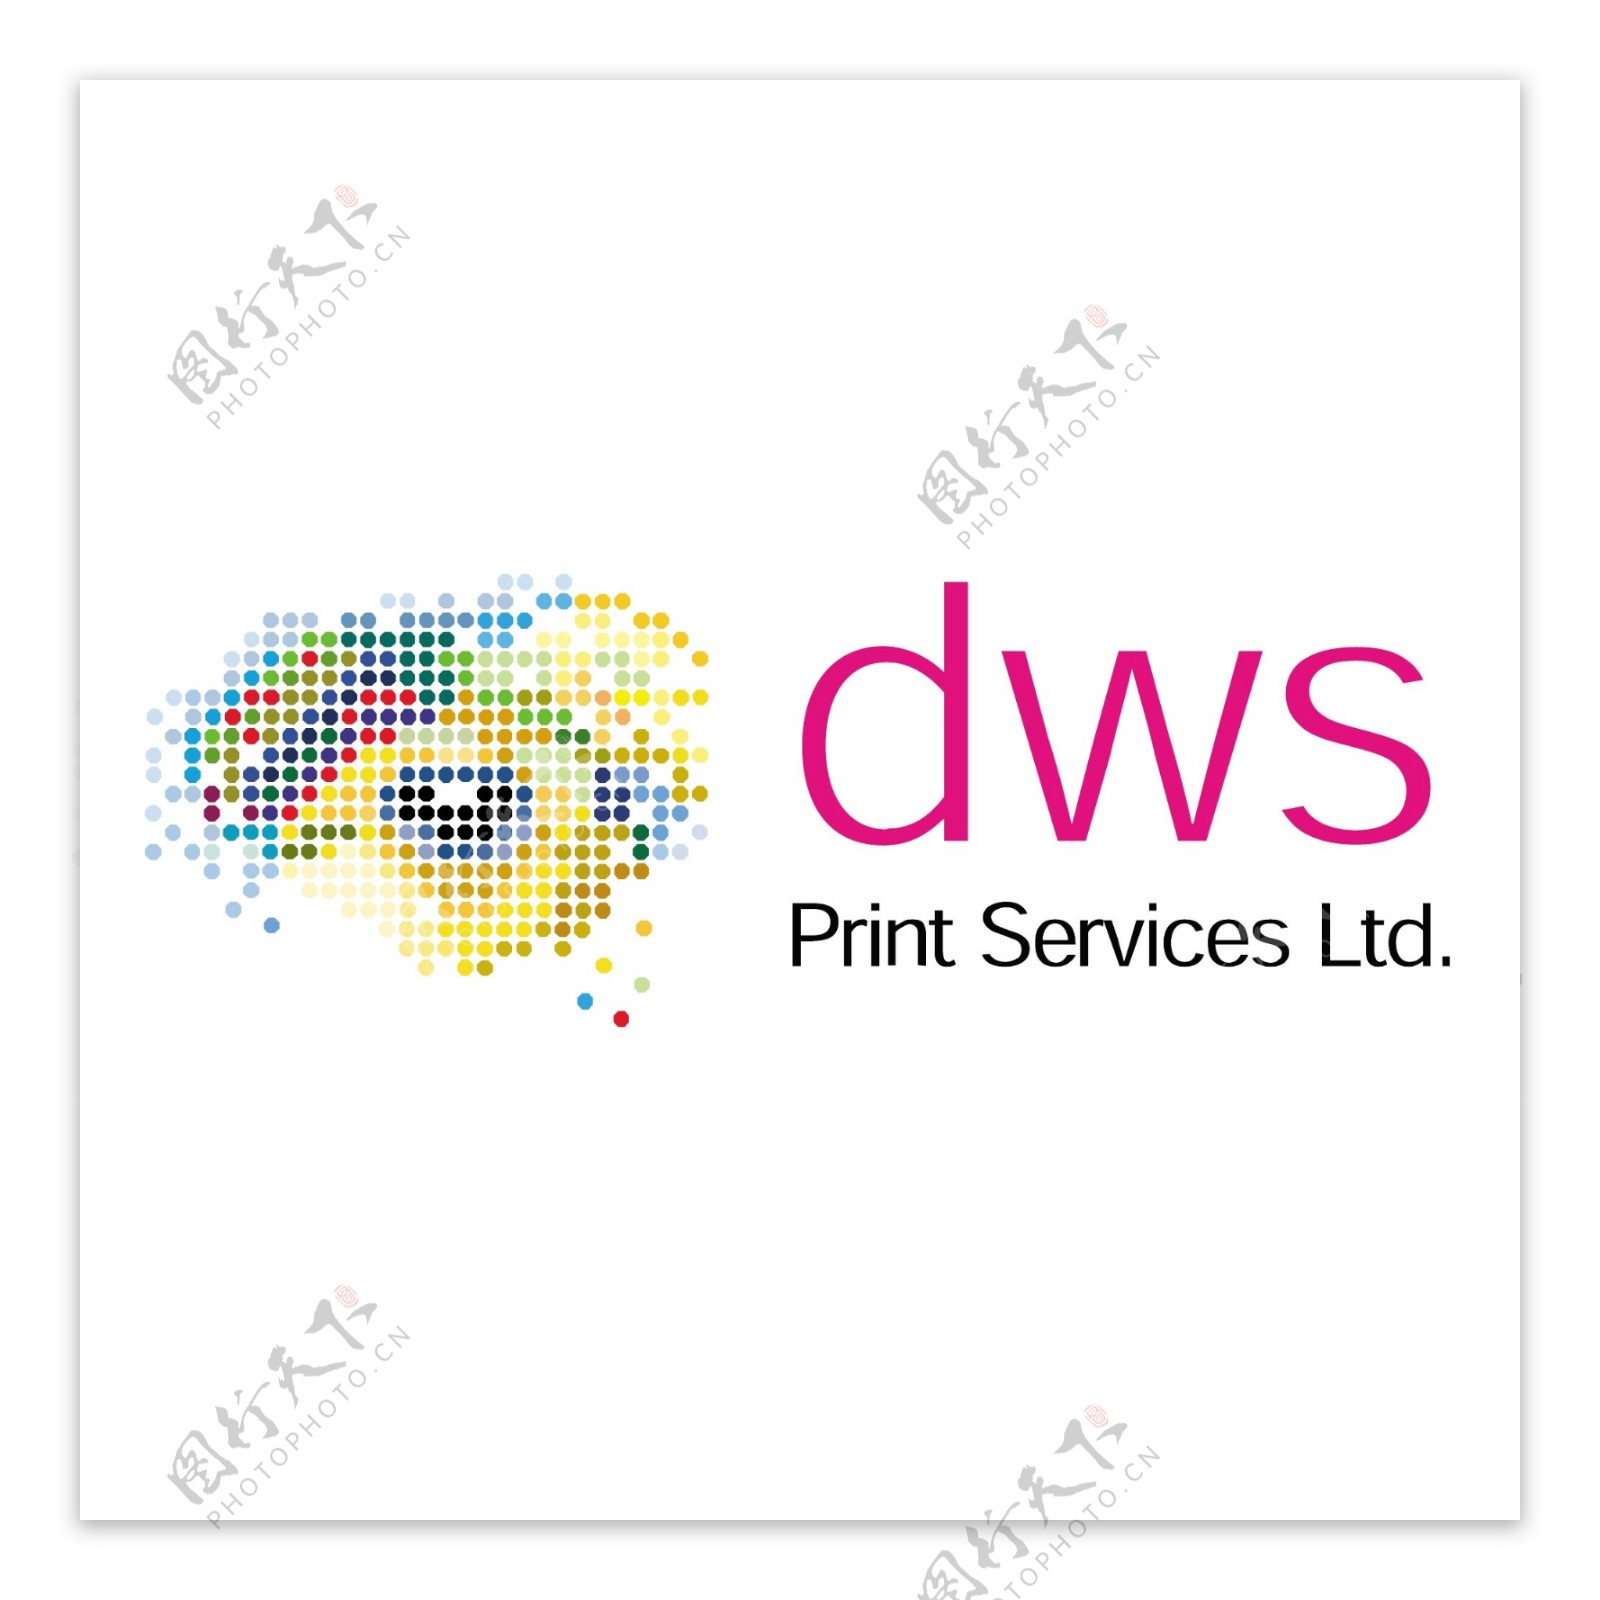 DWS打印服务